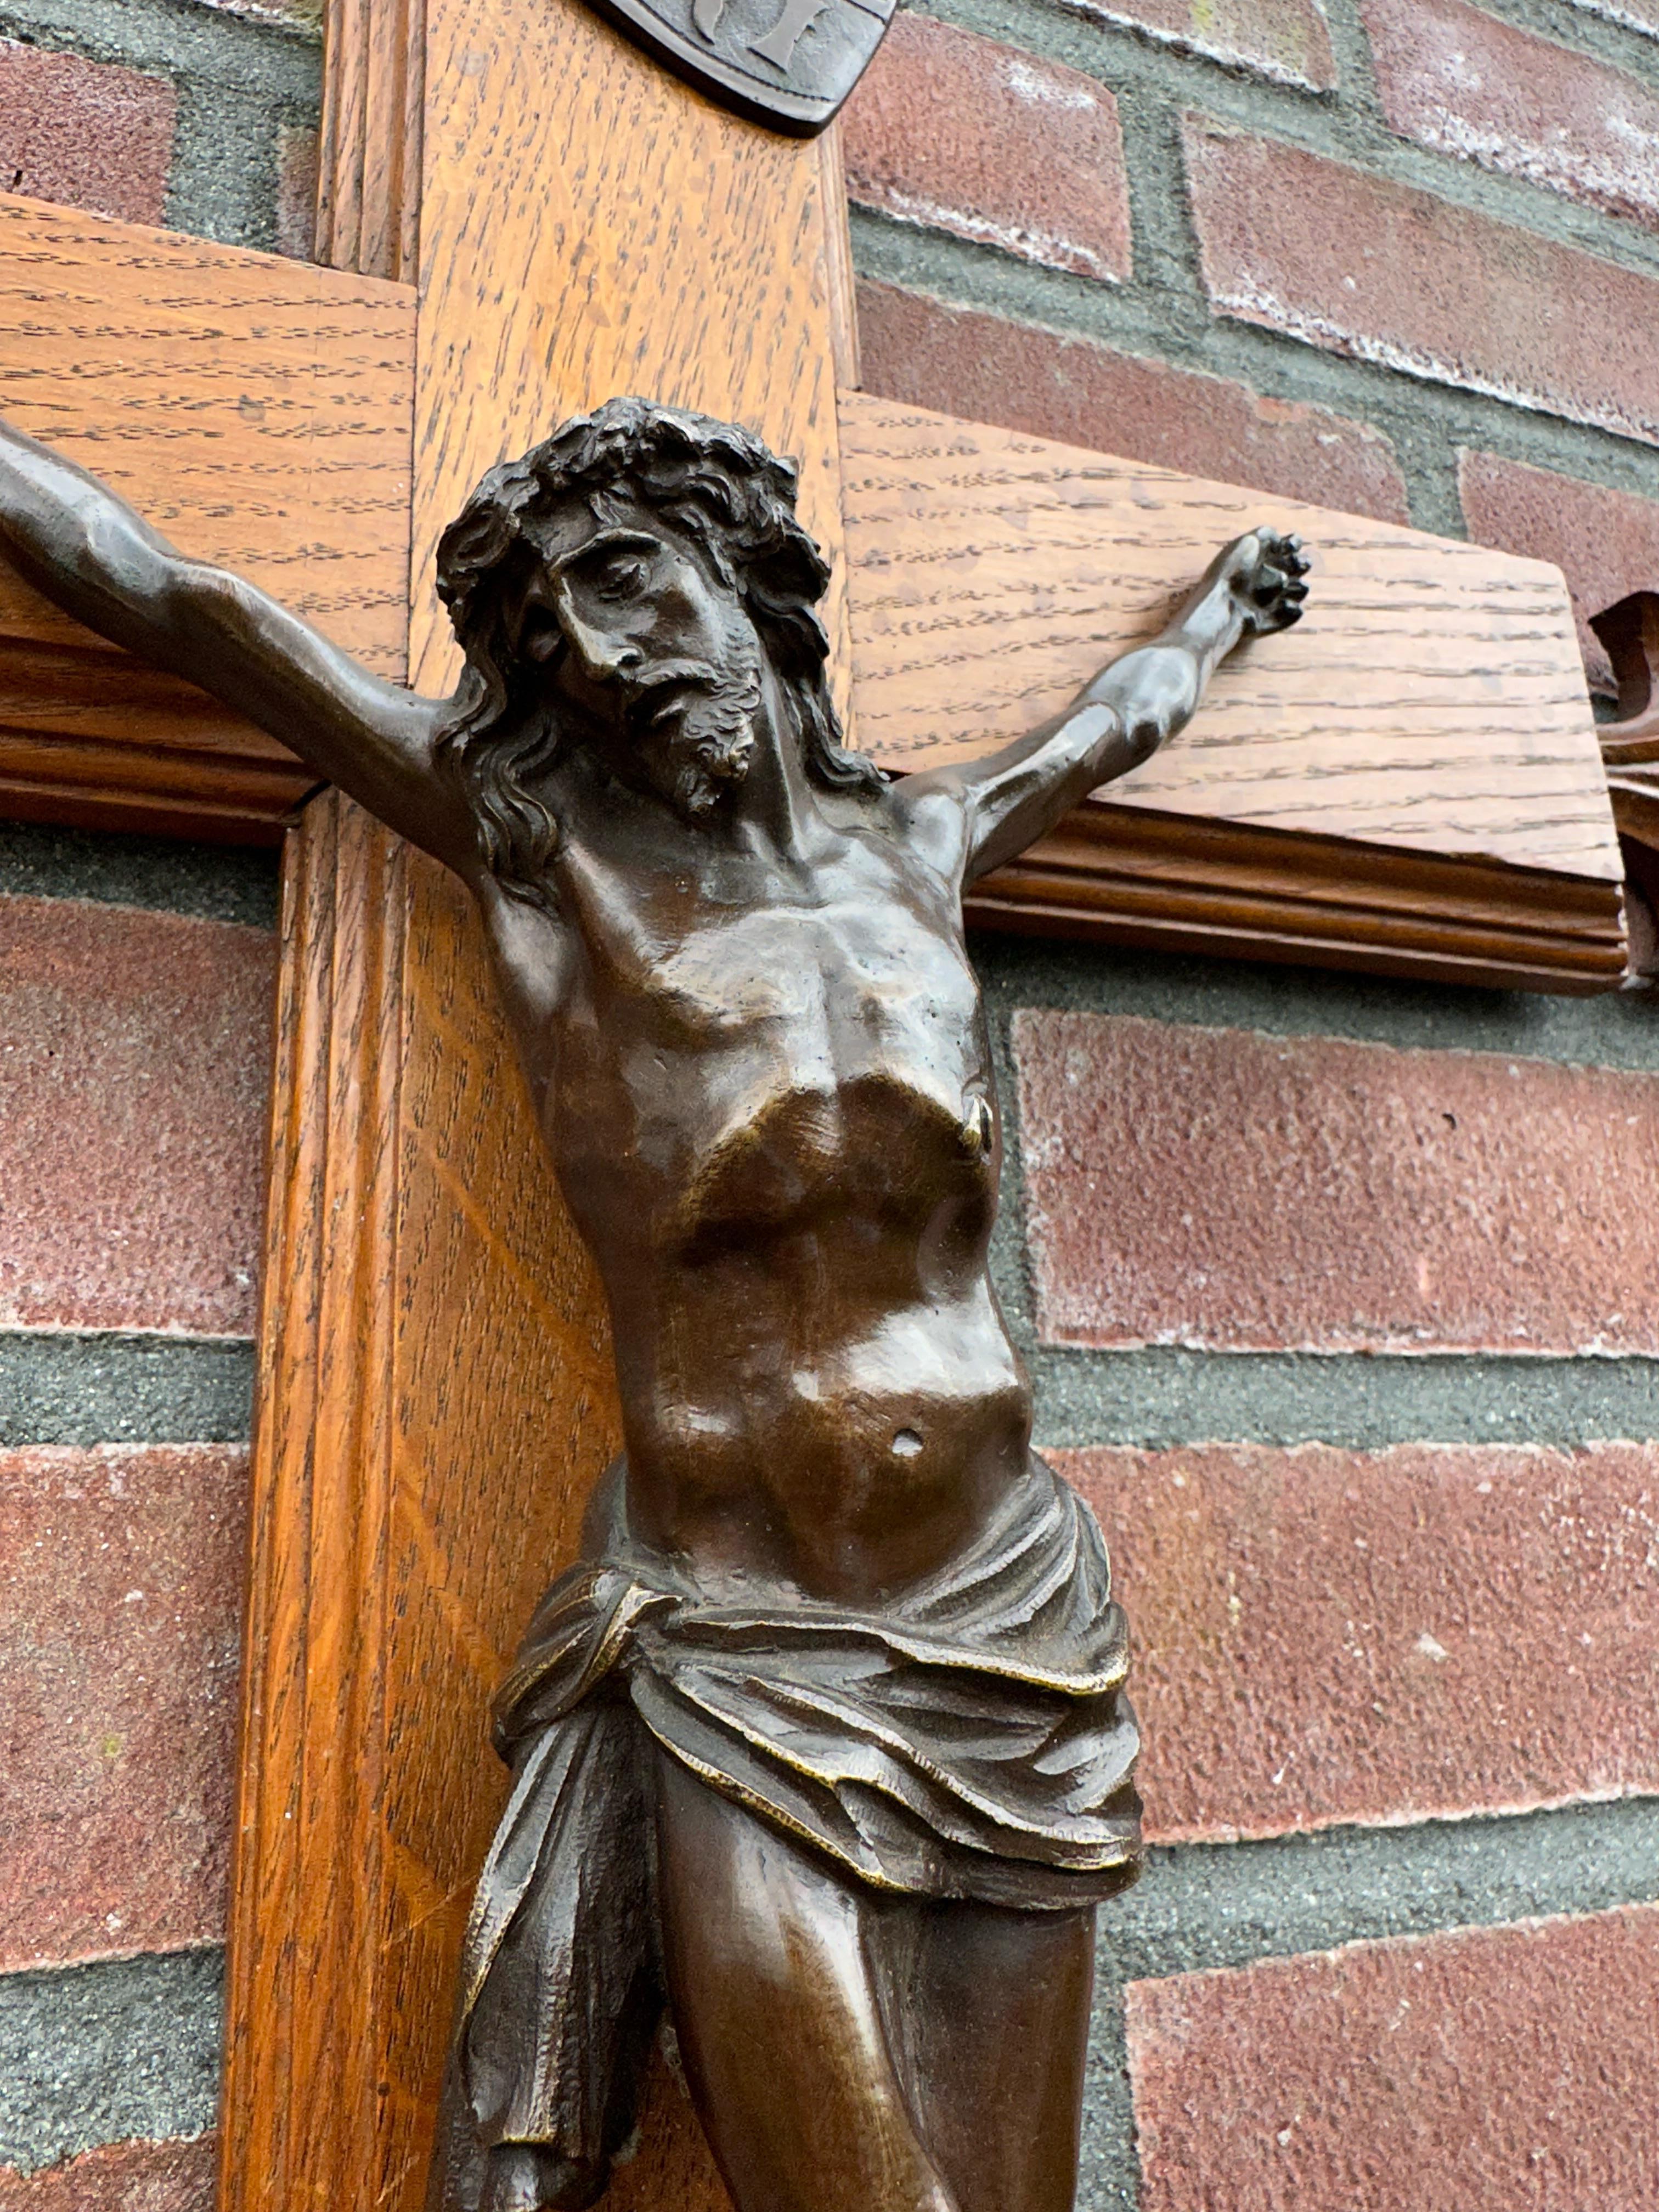 Gute Größe, beste Qualität und hervorragender Zustand antikes Wandkruzifix.

Dieses antike religiöse Kunstwerk besteht aus einem hochwertig geschnitzten Kreuz aus Eichenholz und einem handgefertigten Christuskorpus aus Bronze mit schöner Patina. Das